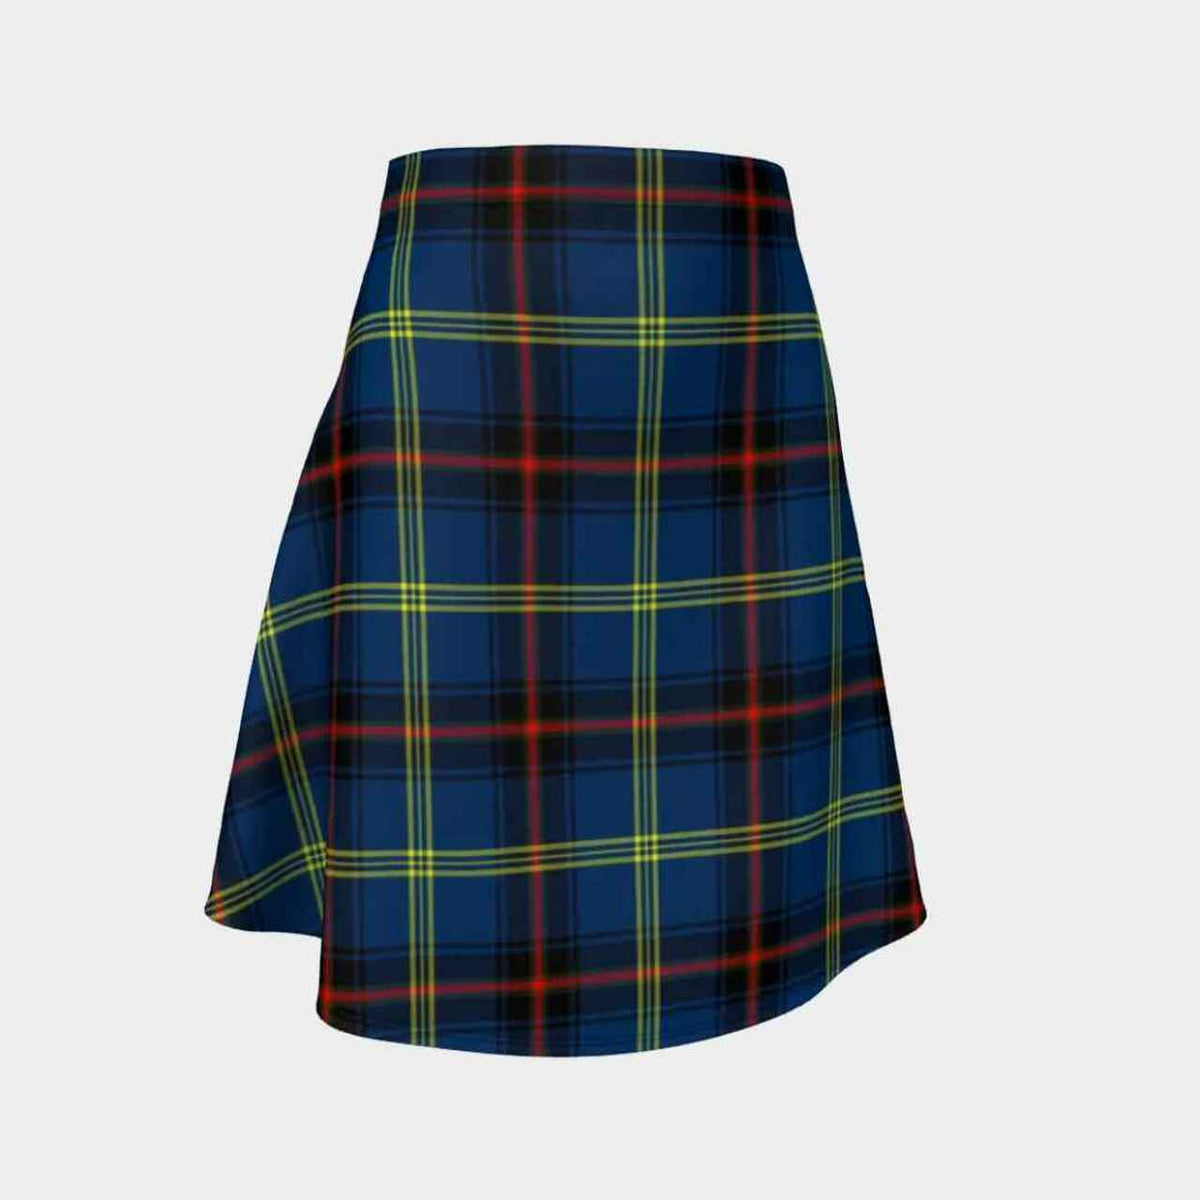 Grewar Tartan Flared Skirt